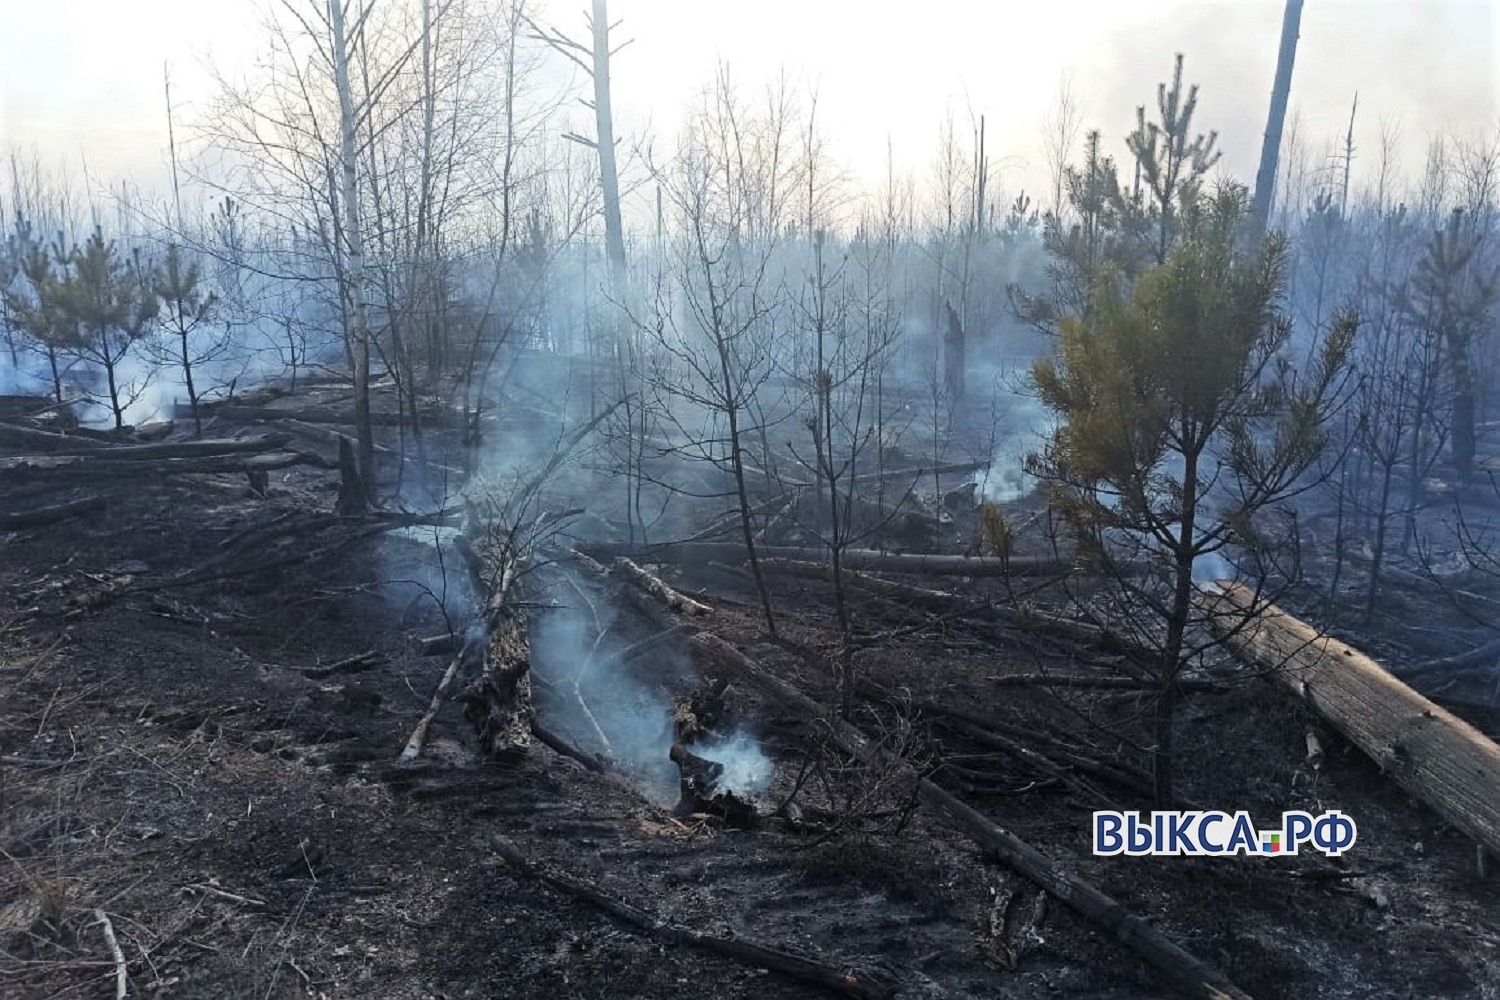 Ещё два лесных пожара произошли в Выксе